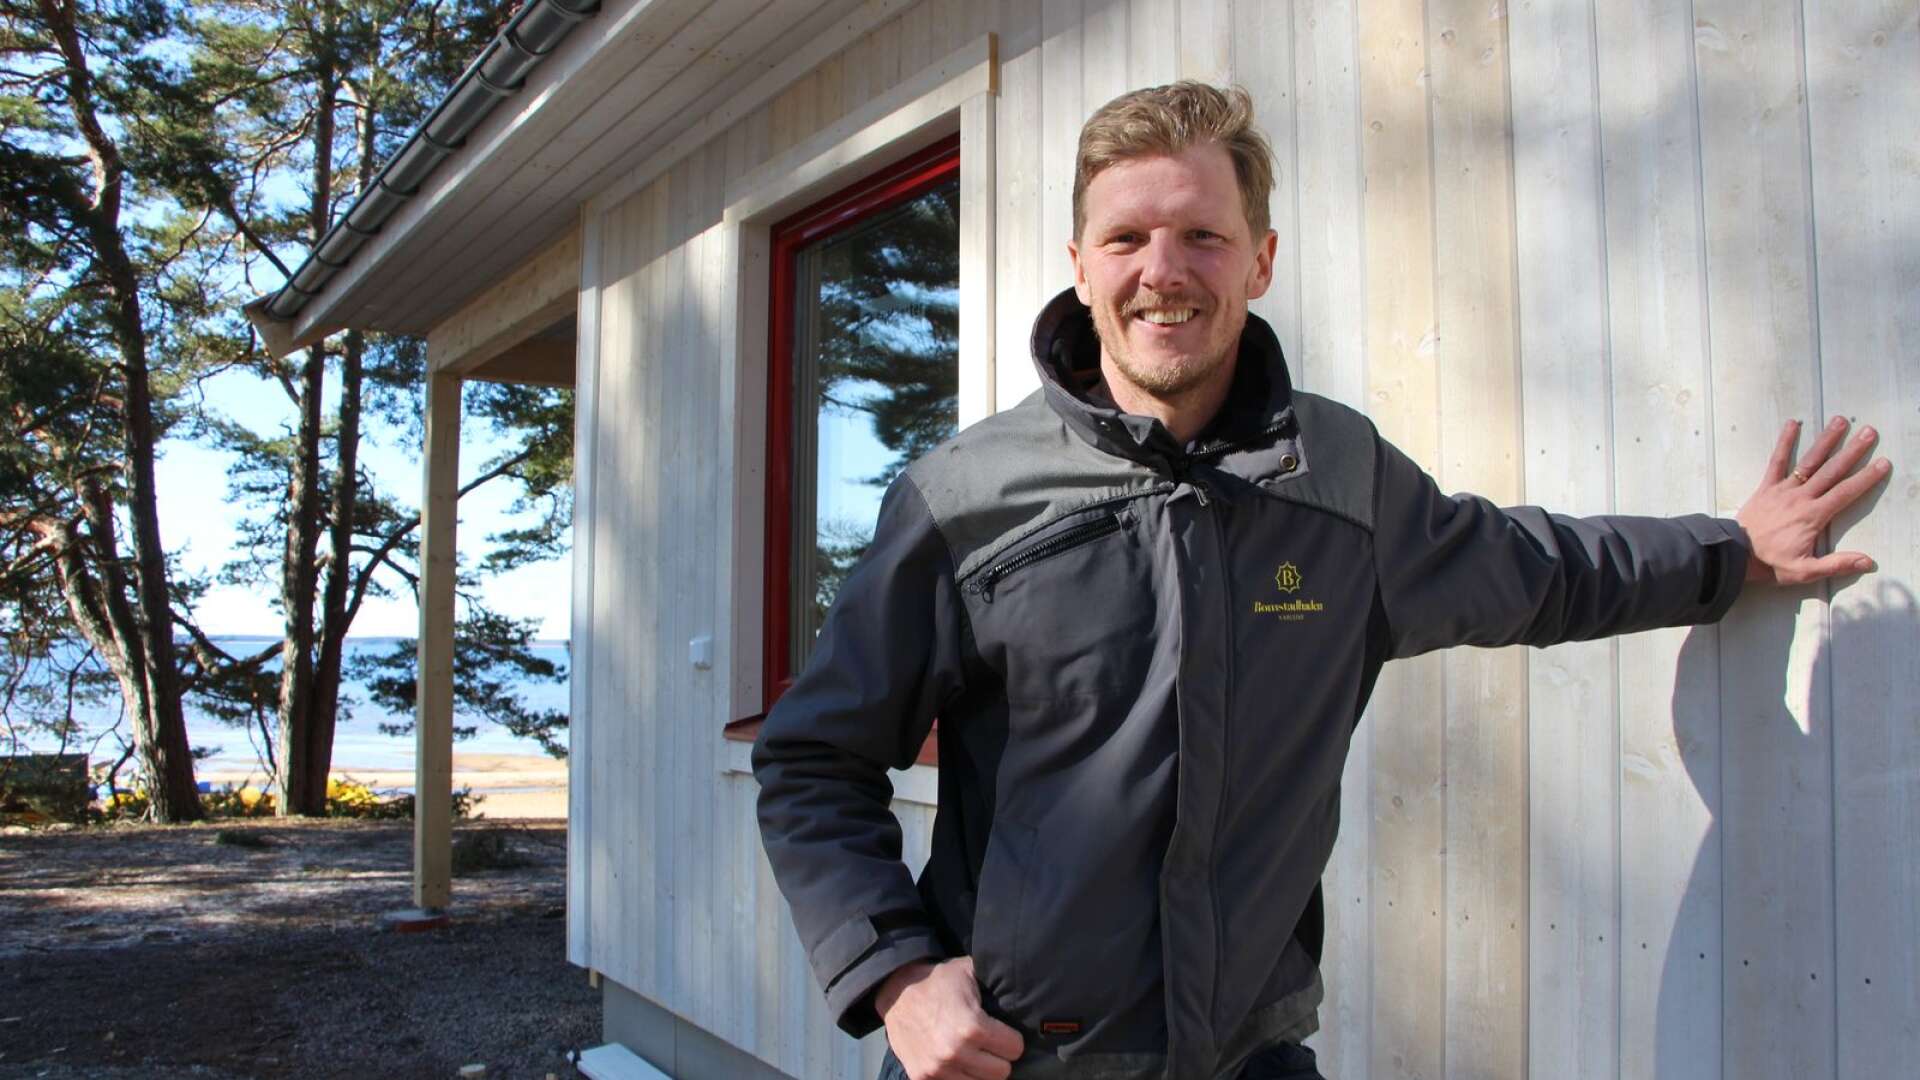 Efter ett mycket bra fjolår satsar Bomstadbadens camping i Karlstad på flera nya projekt. Ett av dem är byggandet av två nya påkostade strandstugor alldeles vid Vänern, berättar vd:n David Nordentjell.